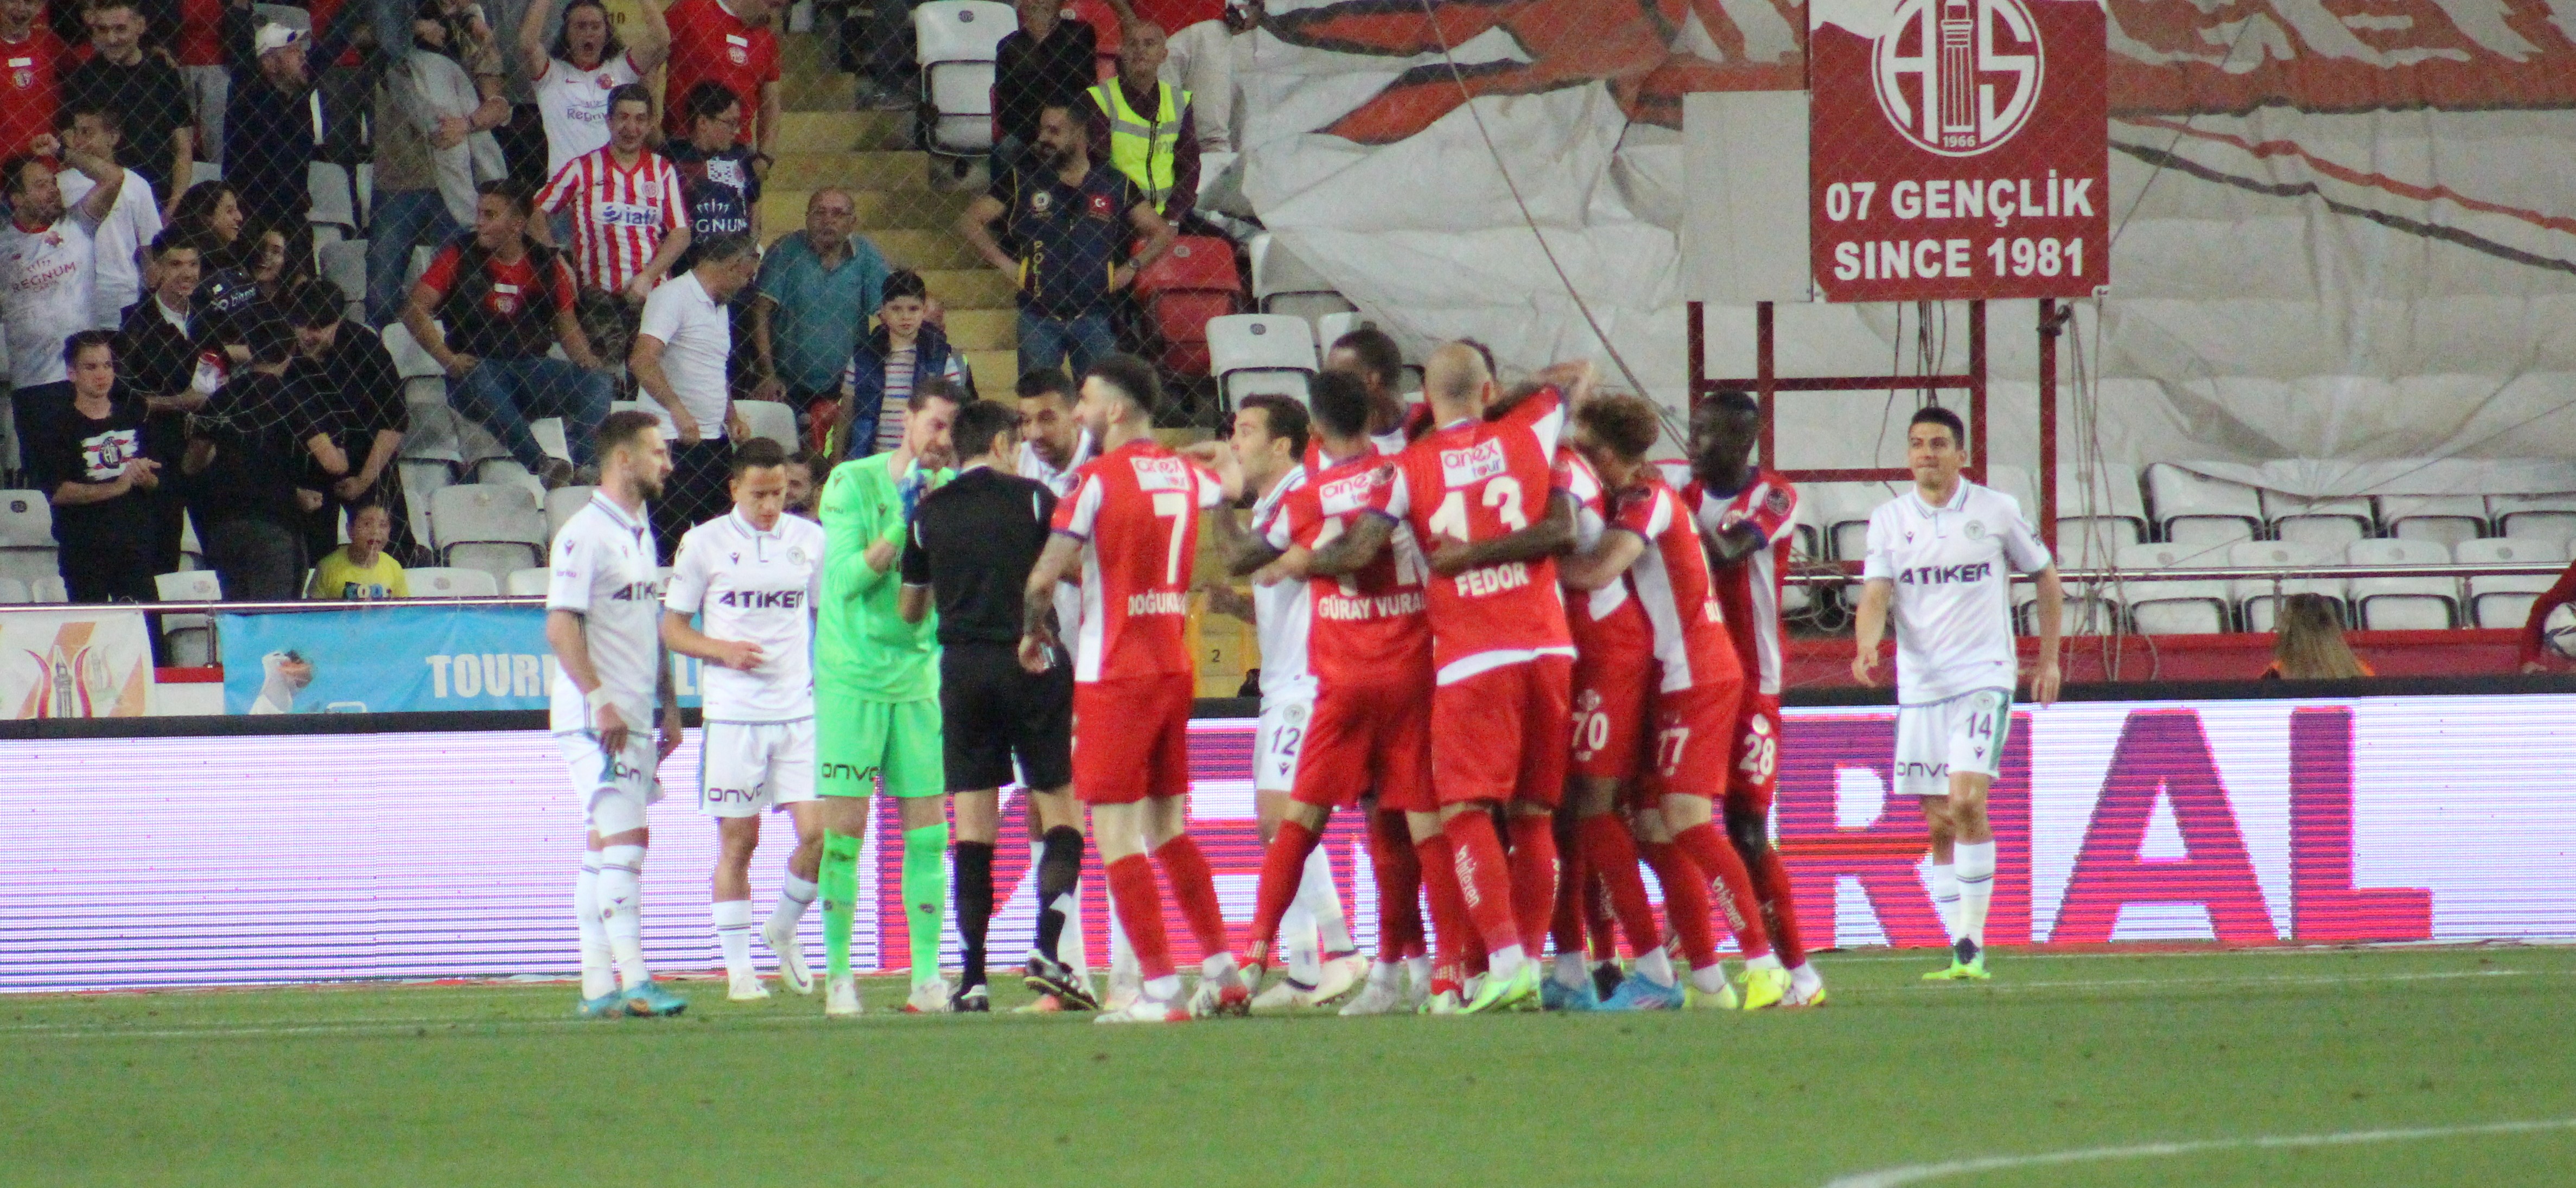 Antalyaspor-Konyaspor maçları gollü geçiyor